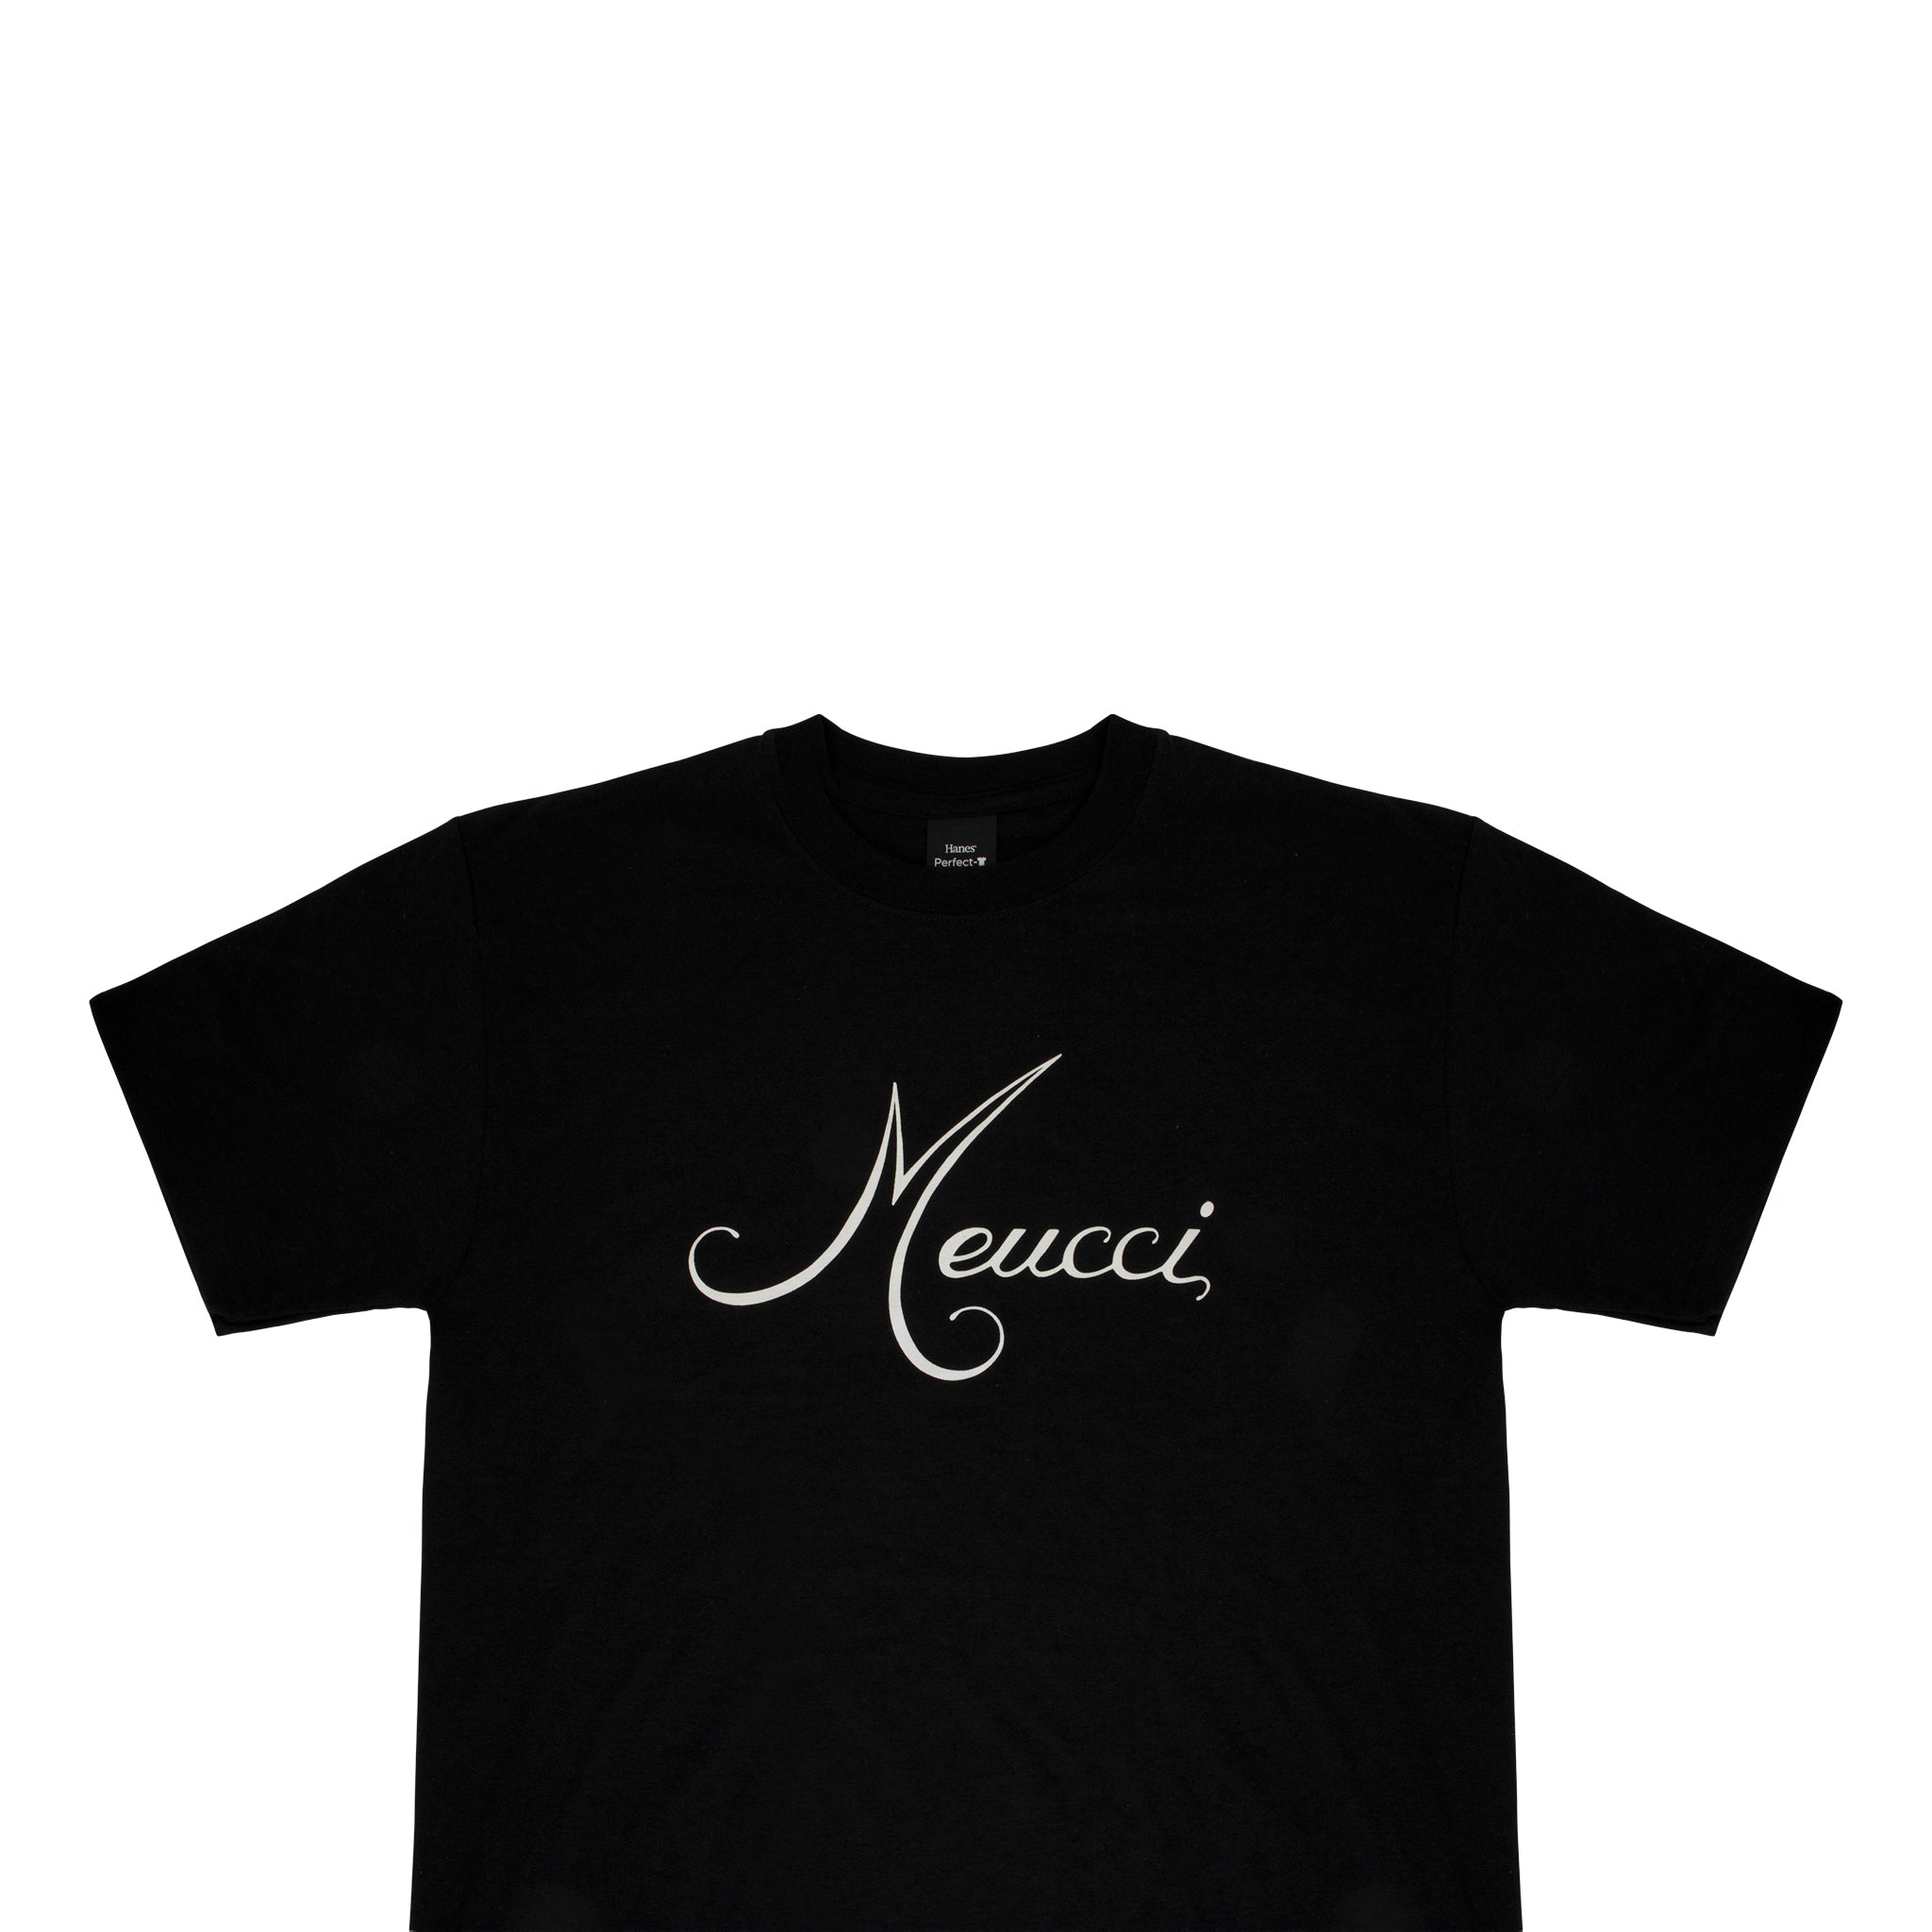 Meucci T-Shirt – Meucci Cues